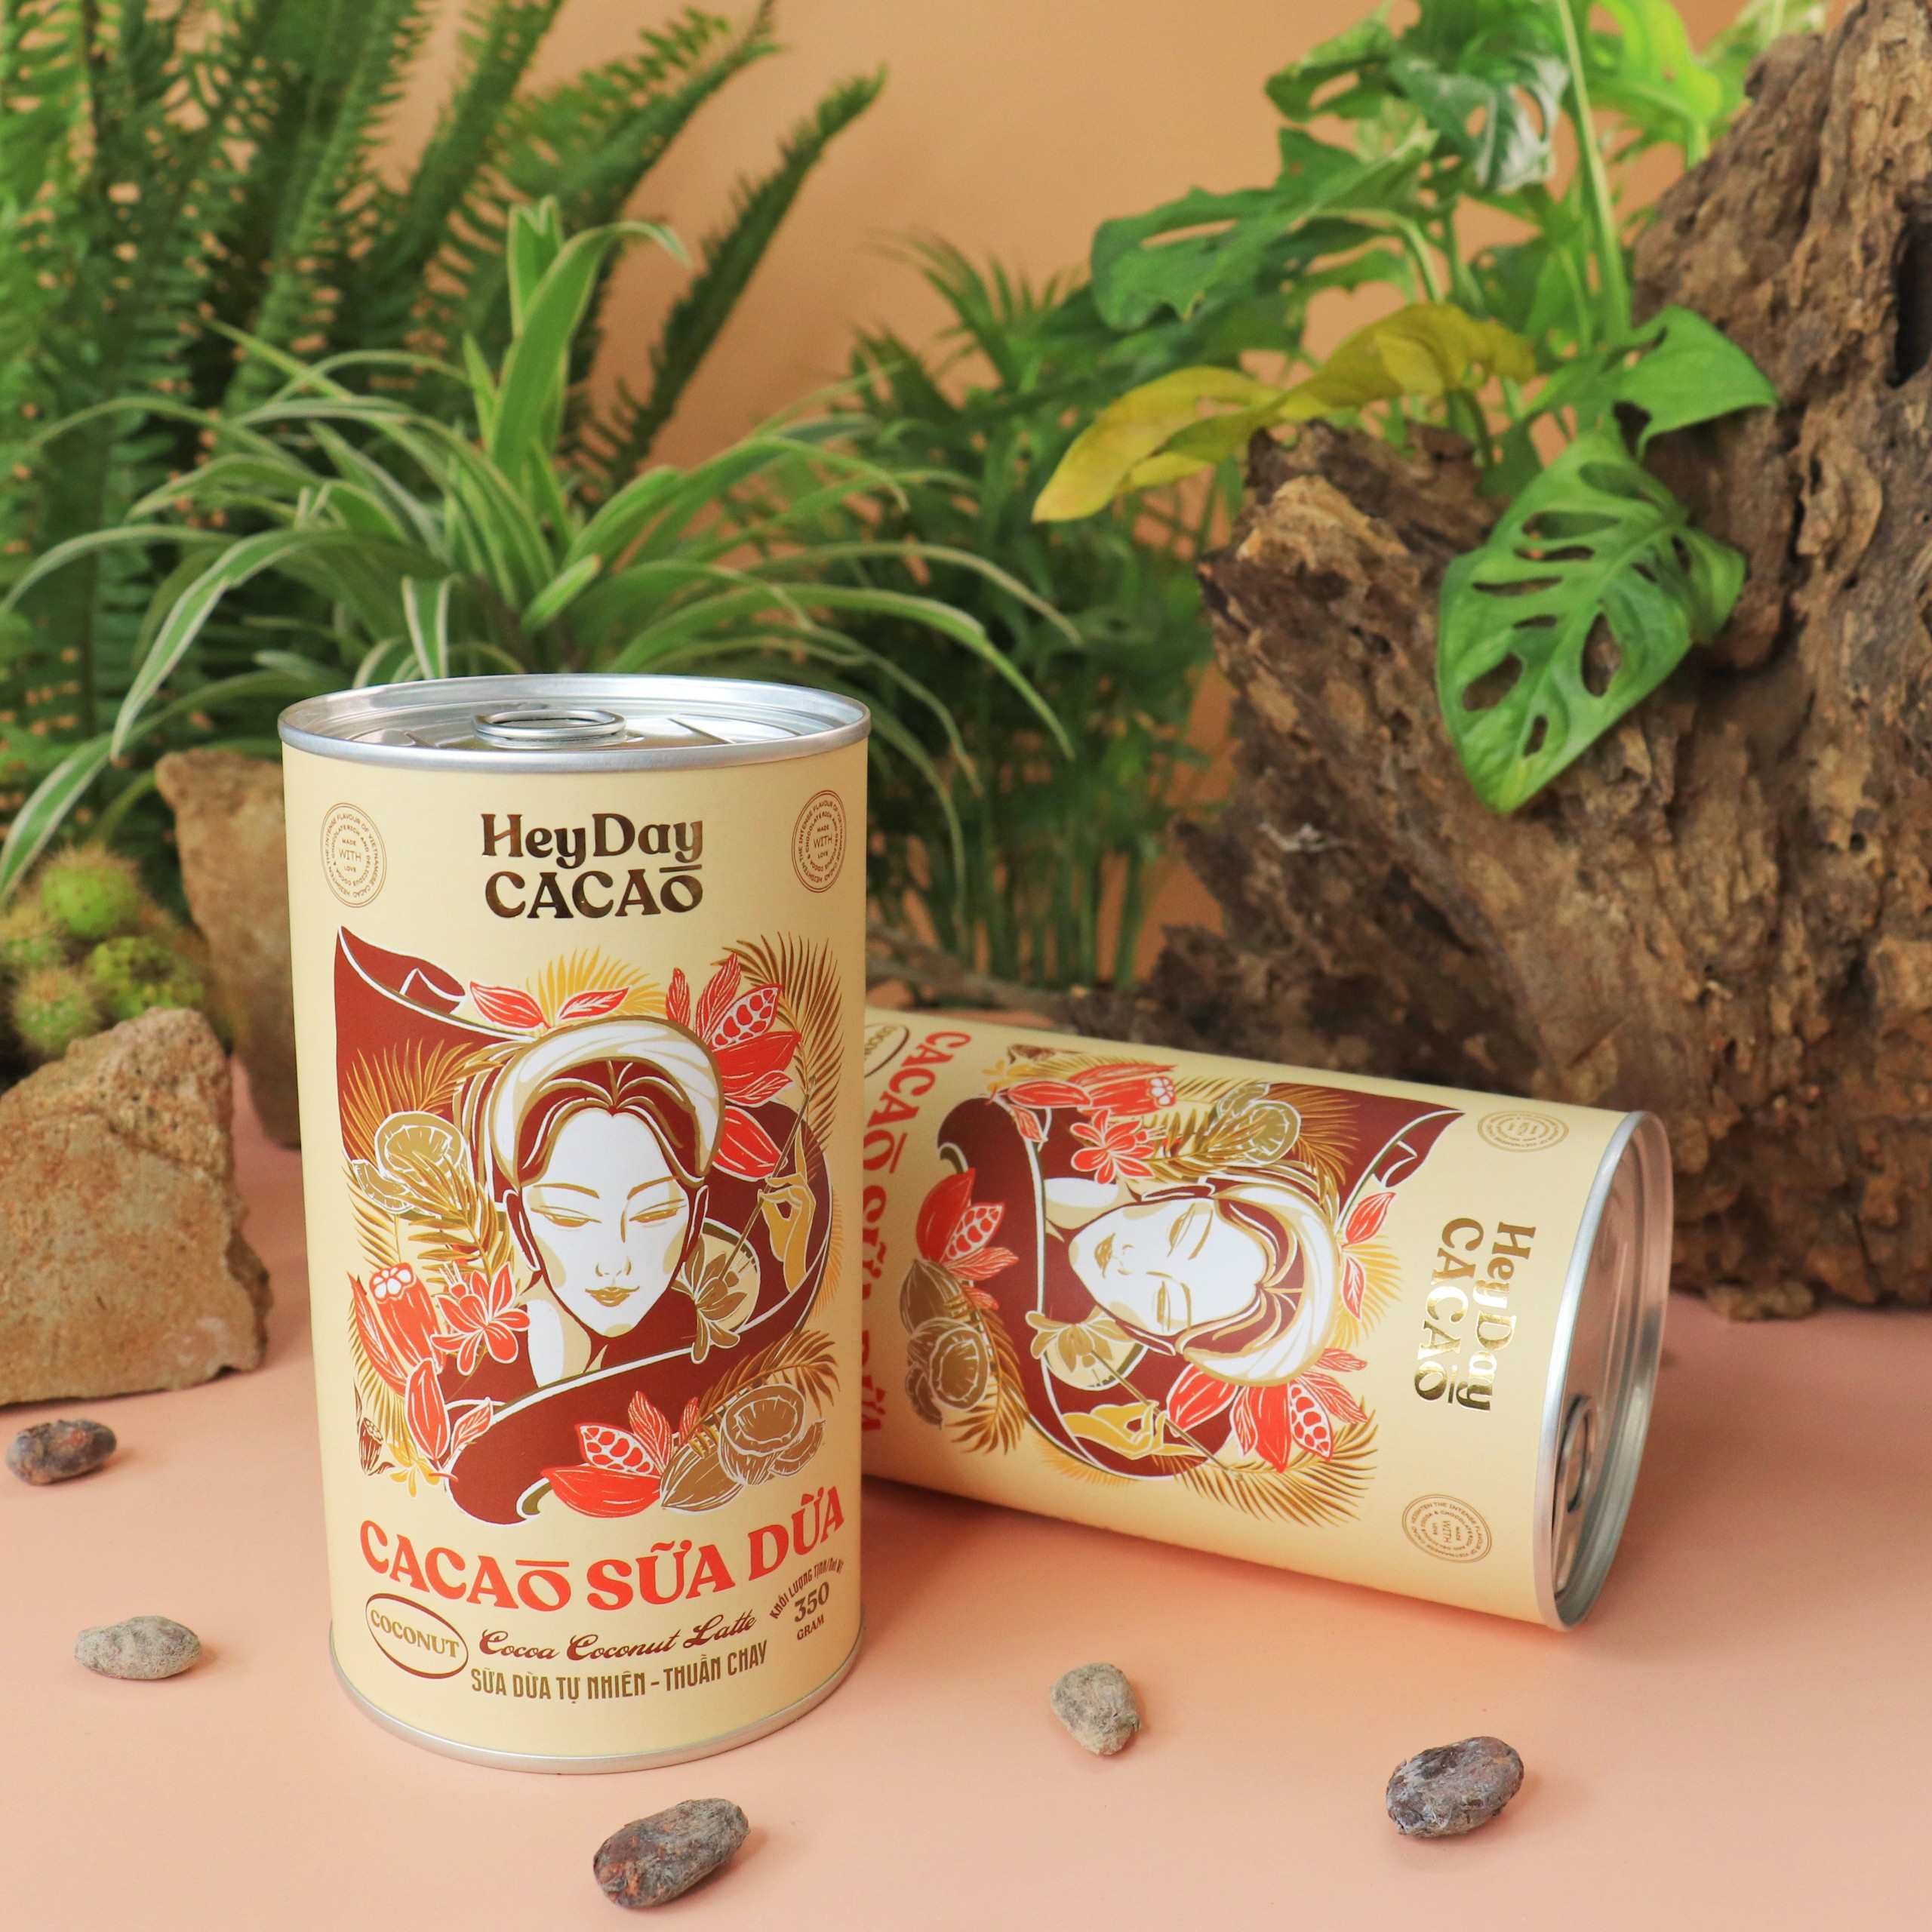 Bột cacao sữa dừa tự nhiên, thuần chay – Lon 350g – Bộ sưu tập sản phẩm cacao "Thật" Heydaycacao